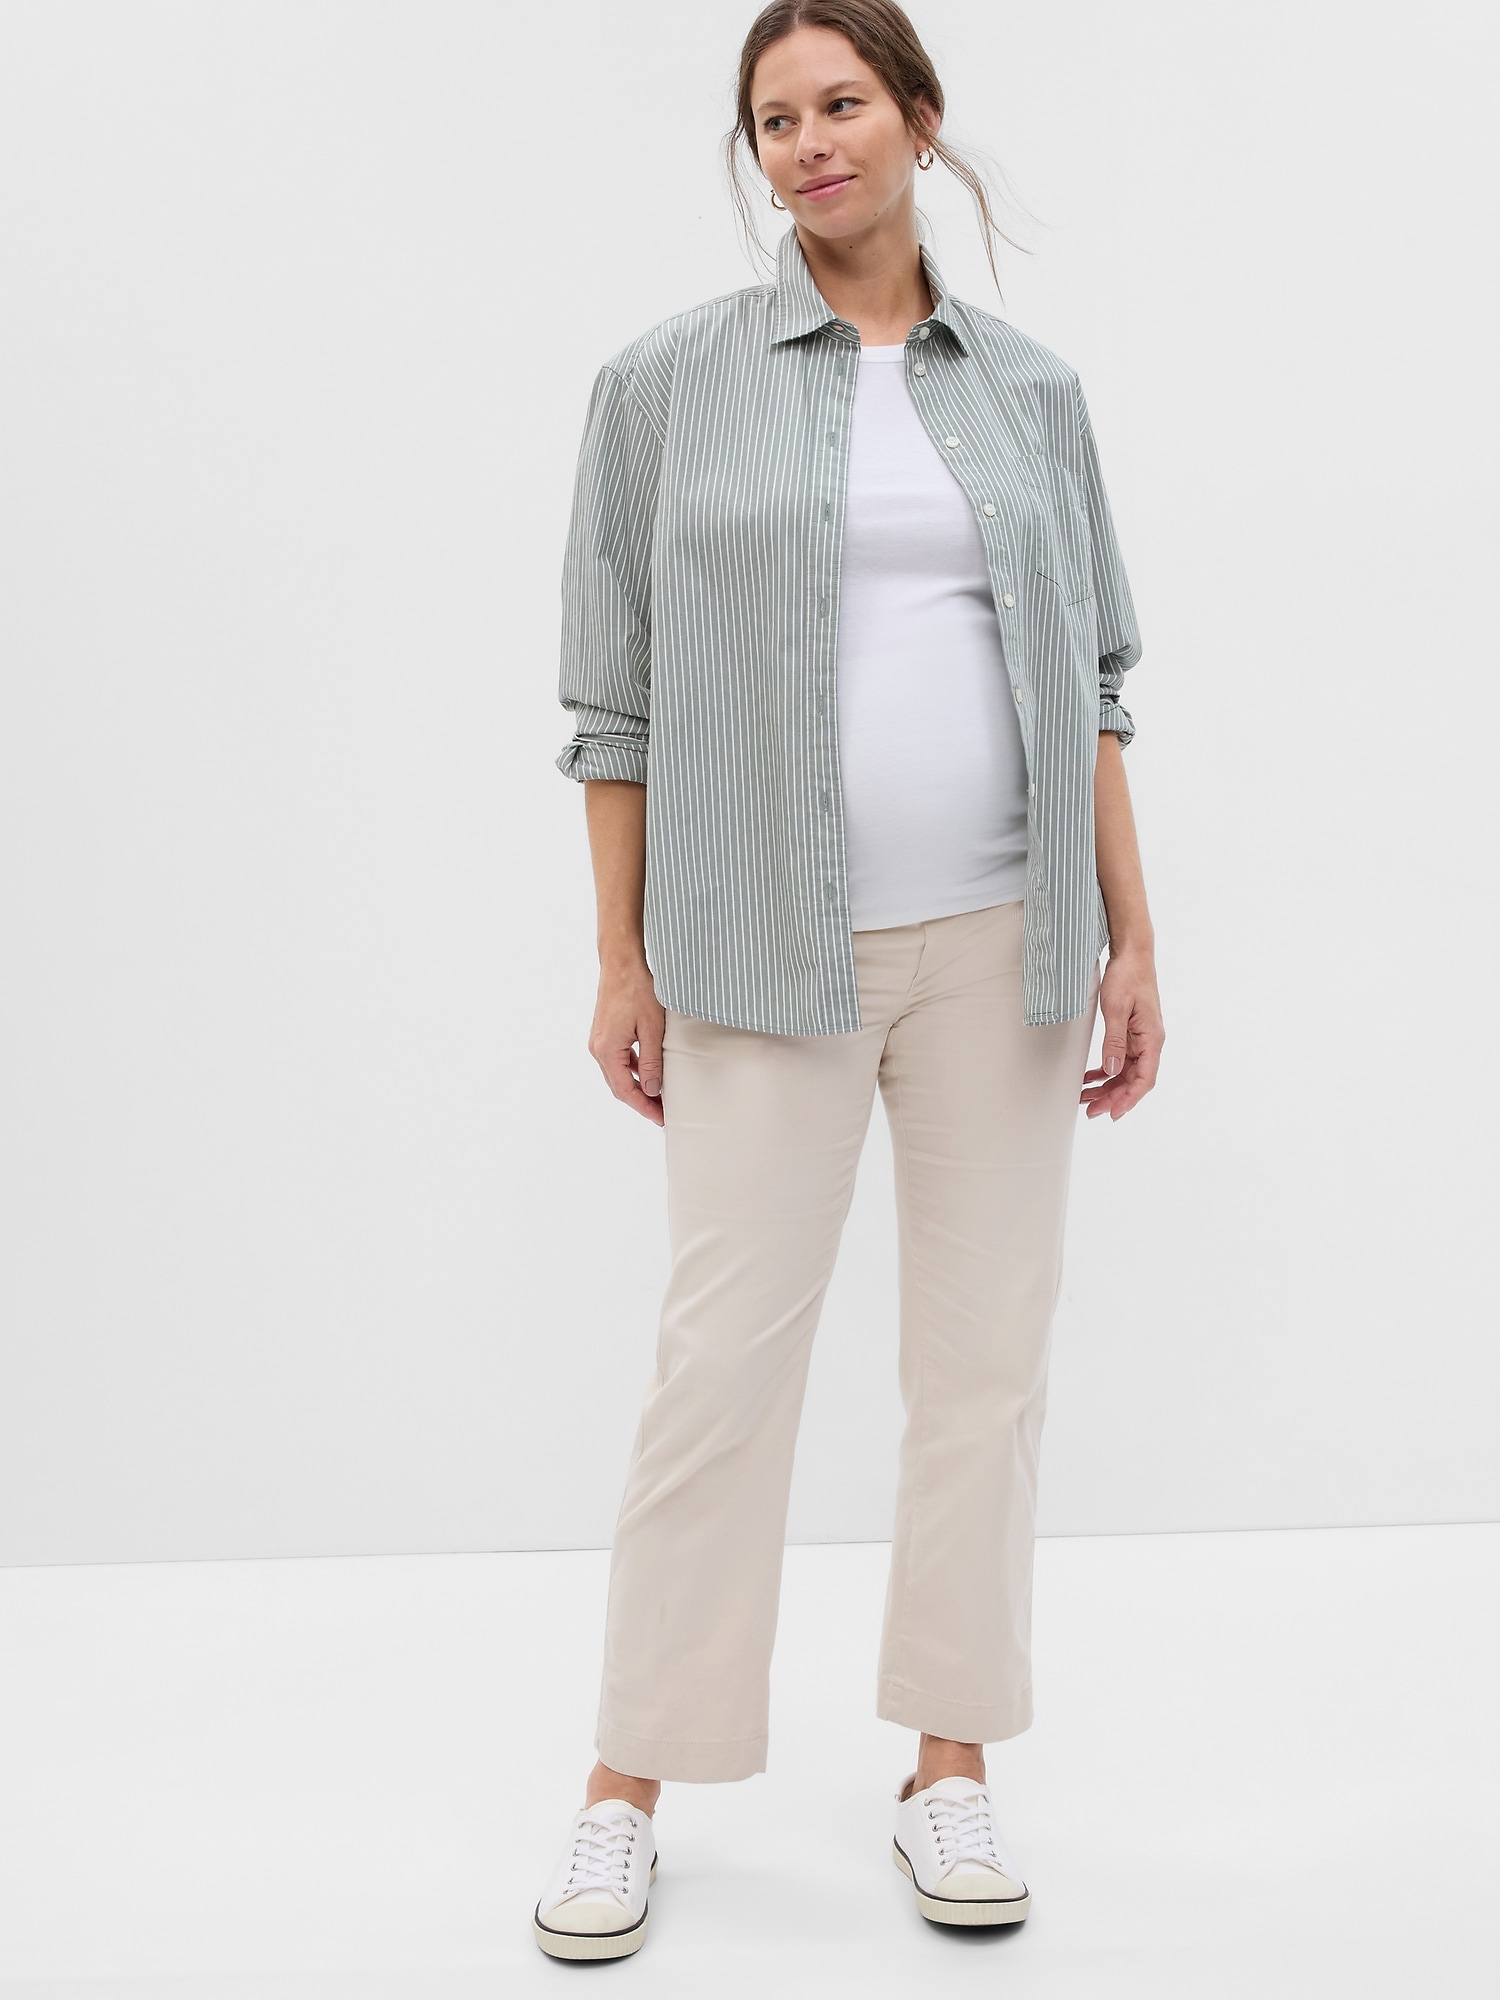 White Gap Maternity Full Panel Girlfriend Chino Pants (Like New - Size 29R)  - Motherhood Closet - Maternity Consignment